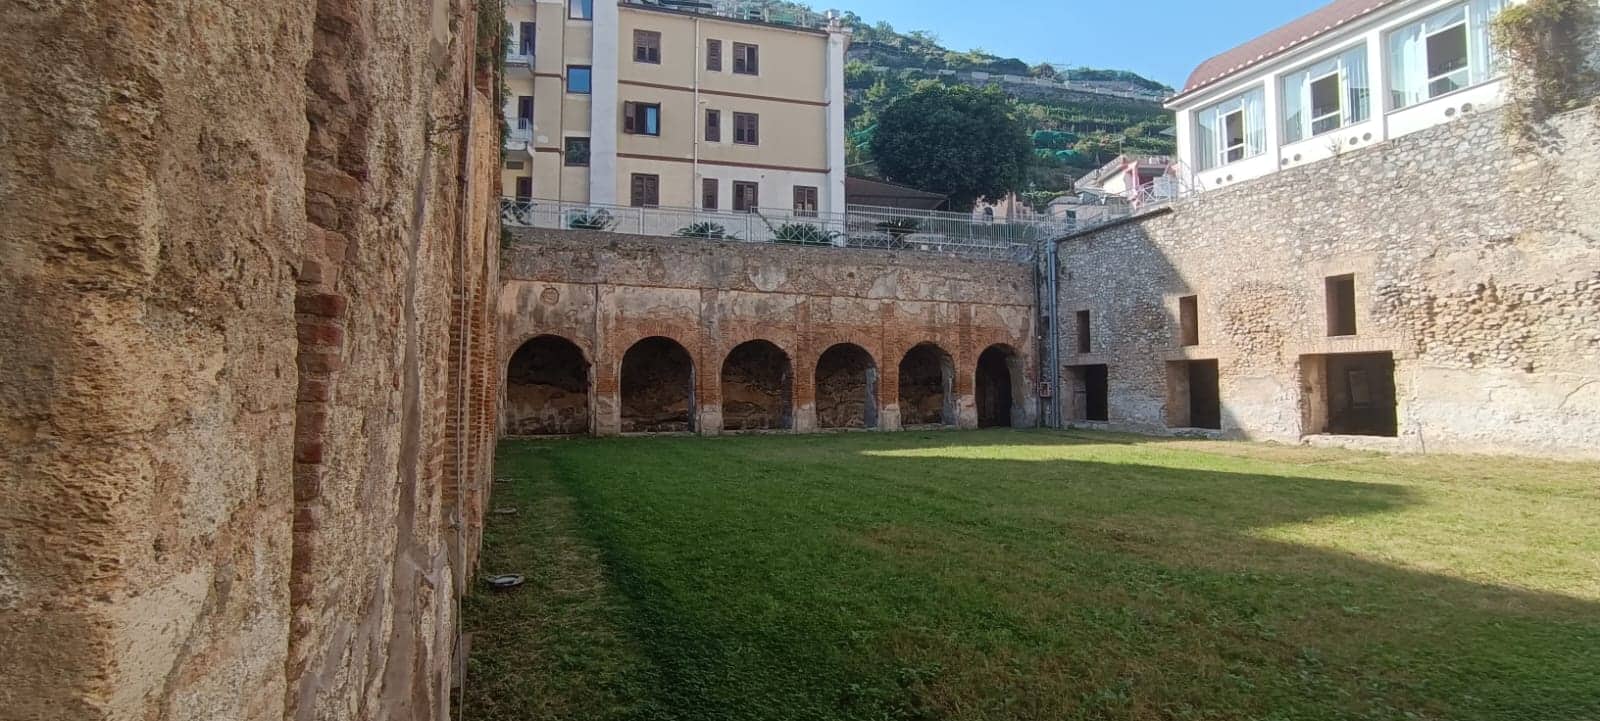 restauri villa romana marittima di Minori